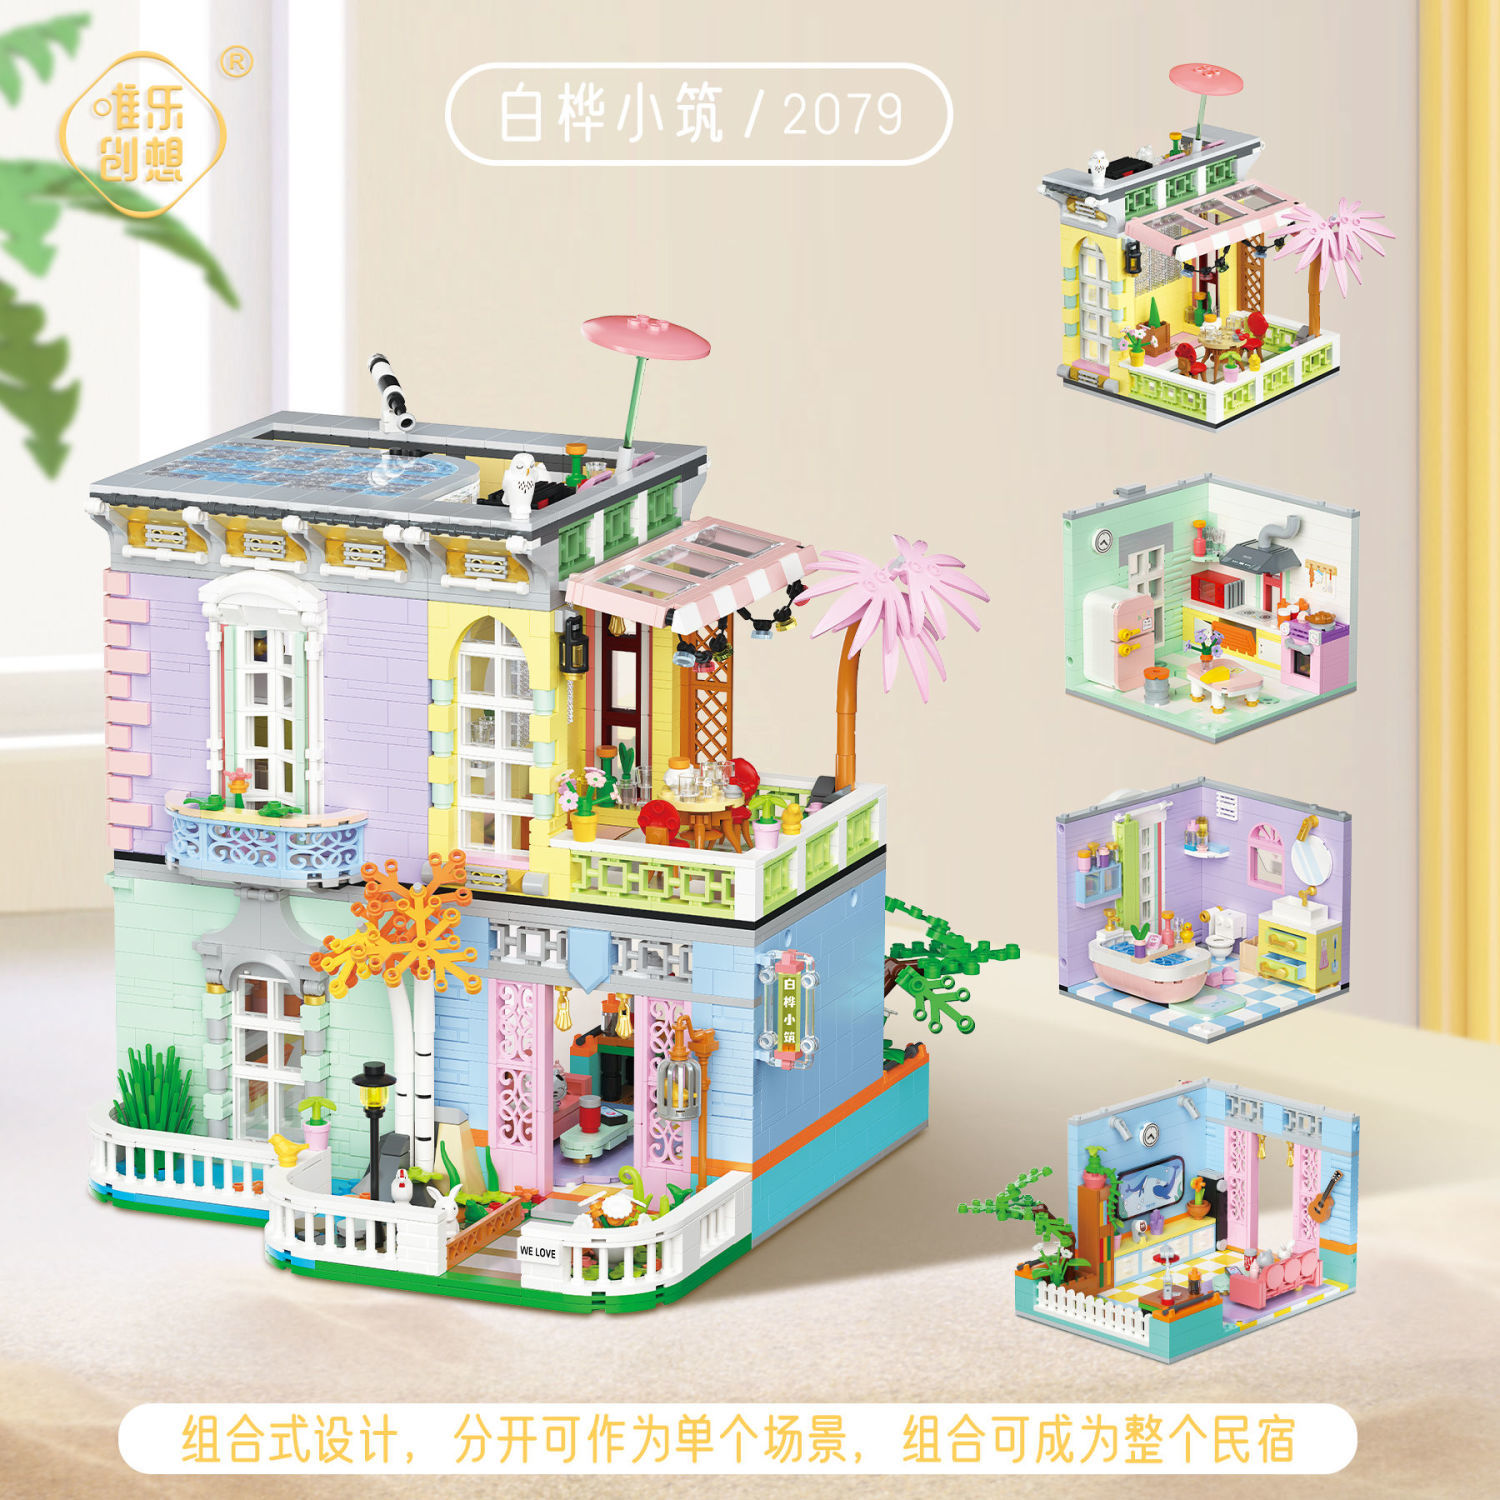 高档中国潮玩积木建筑缤纷街景系列小颗粒益智拼装男女孩儿童玩具